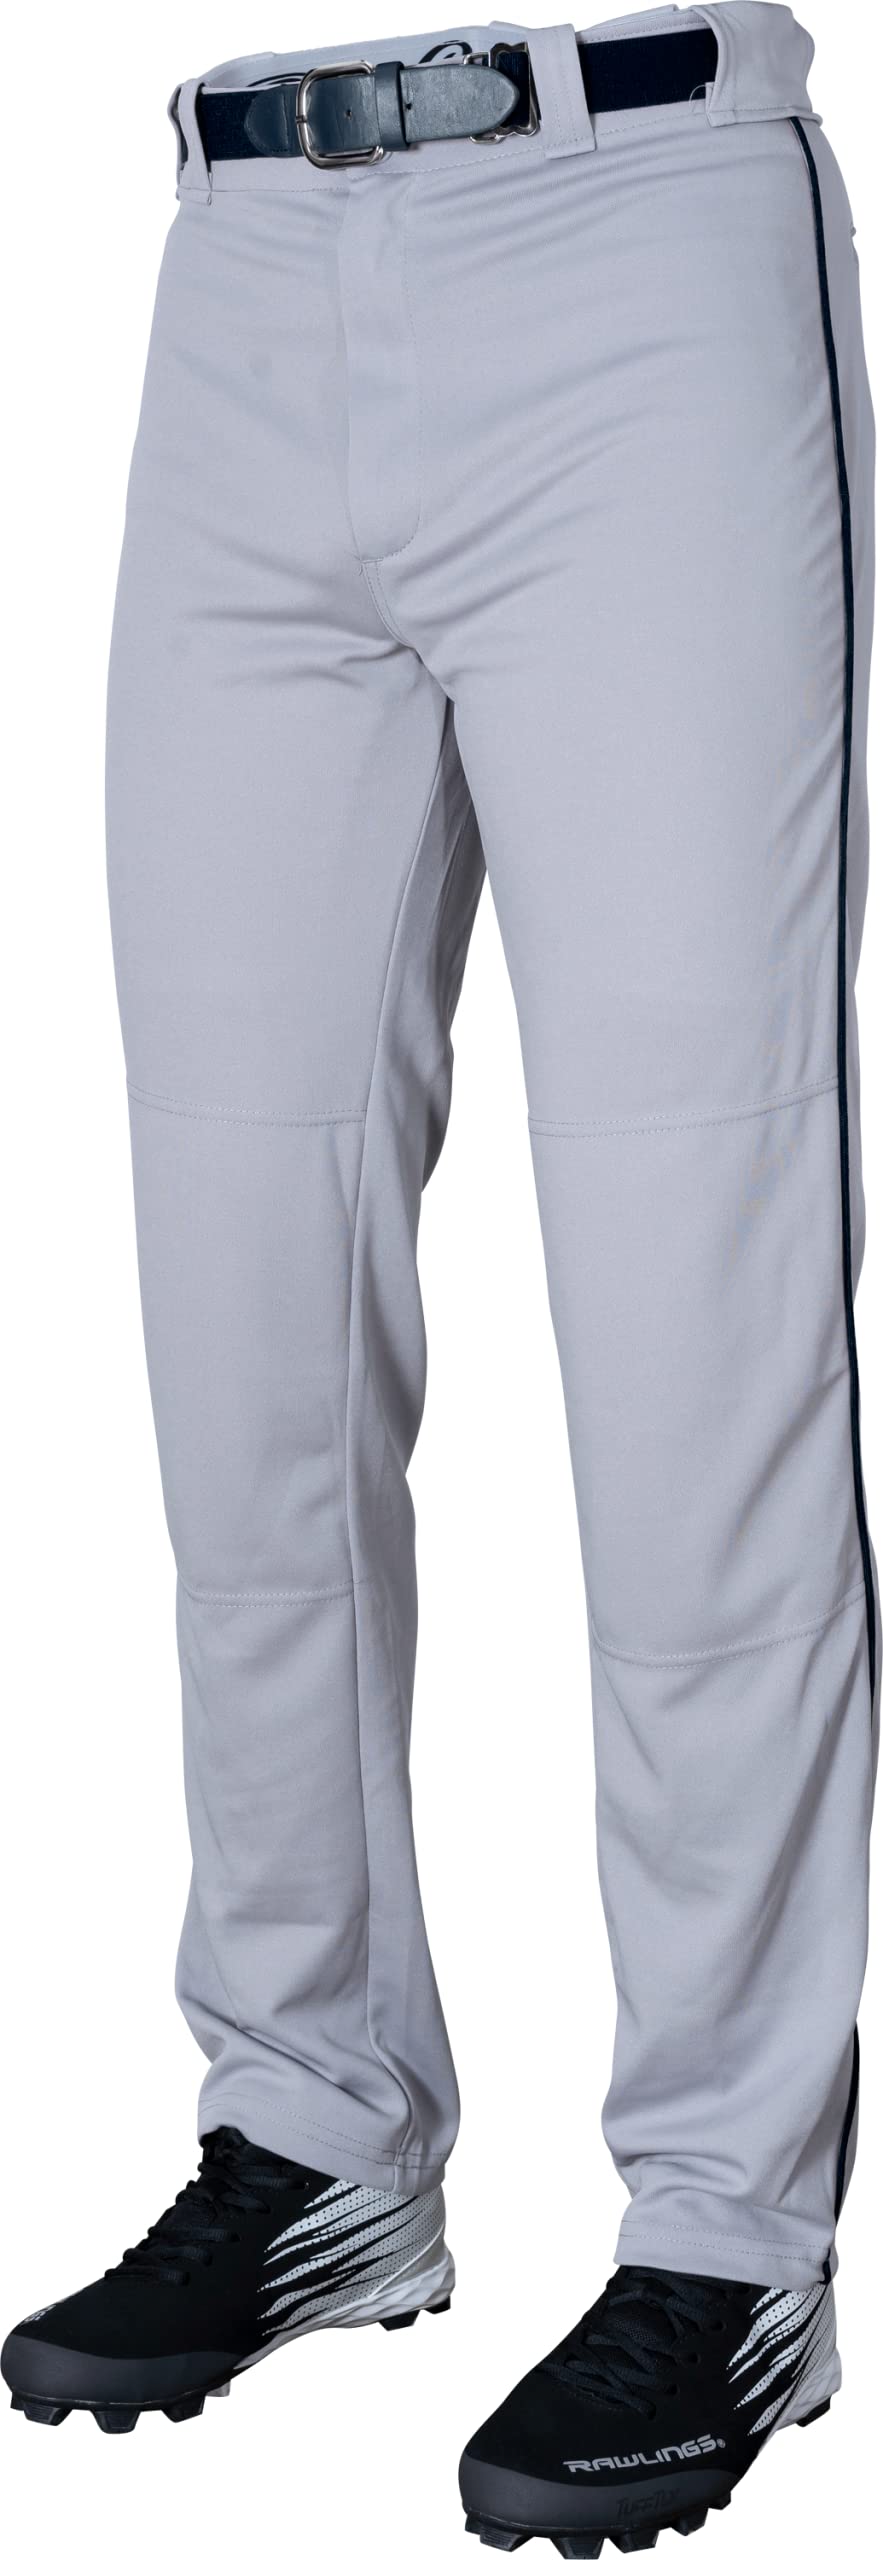 Rawlings Unisex-Erwachsene Halbentspannte Baseballhose in voller Länge, paspeliert, Erwachsenengrößen, mehrere Farben Hose, Grau/Marineblau, Large